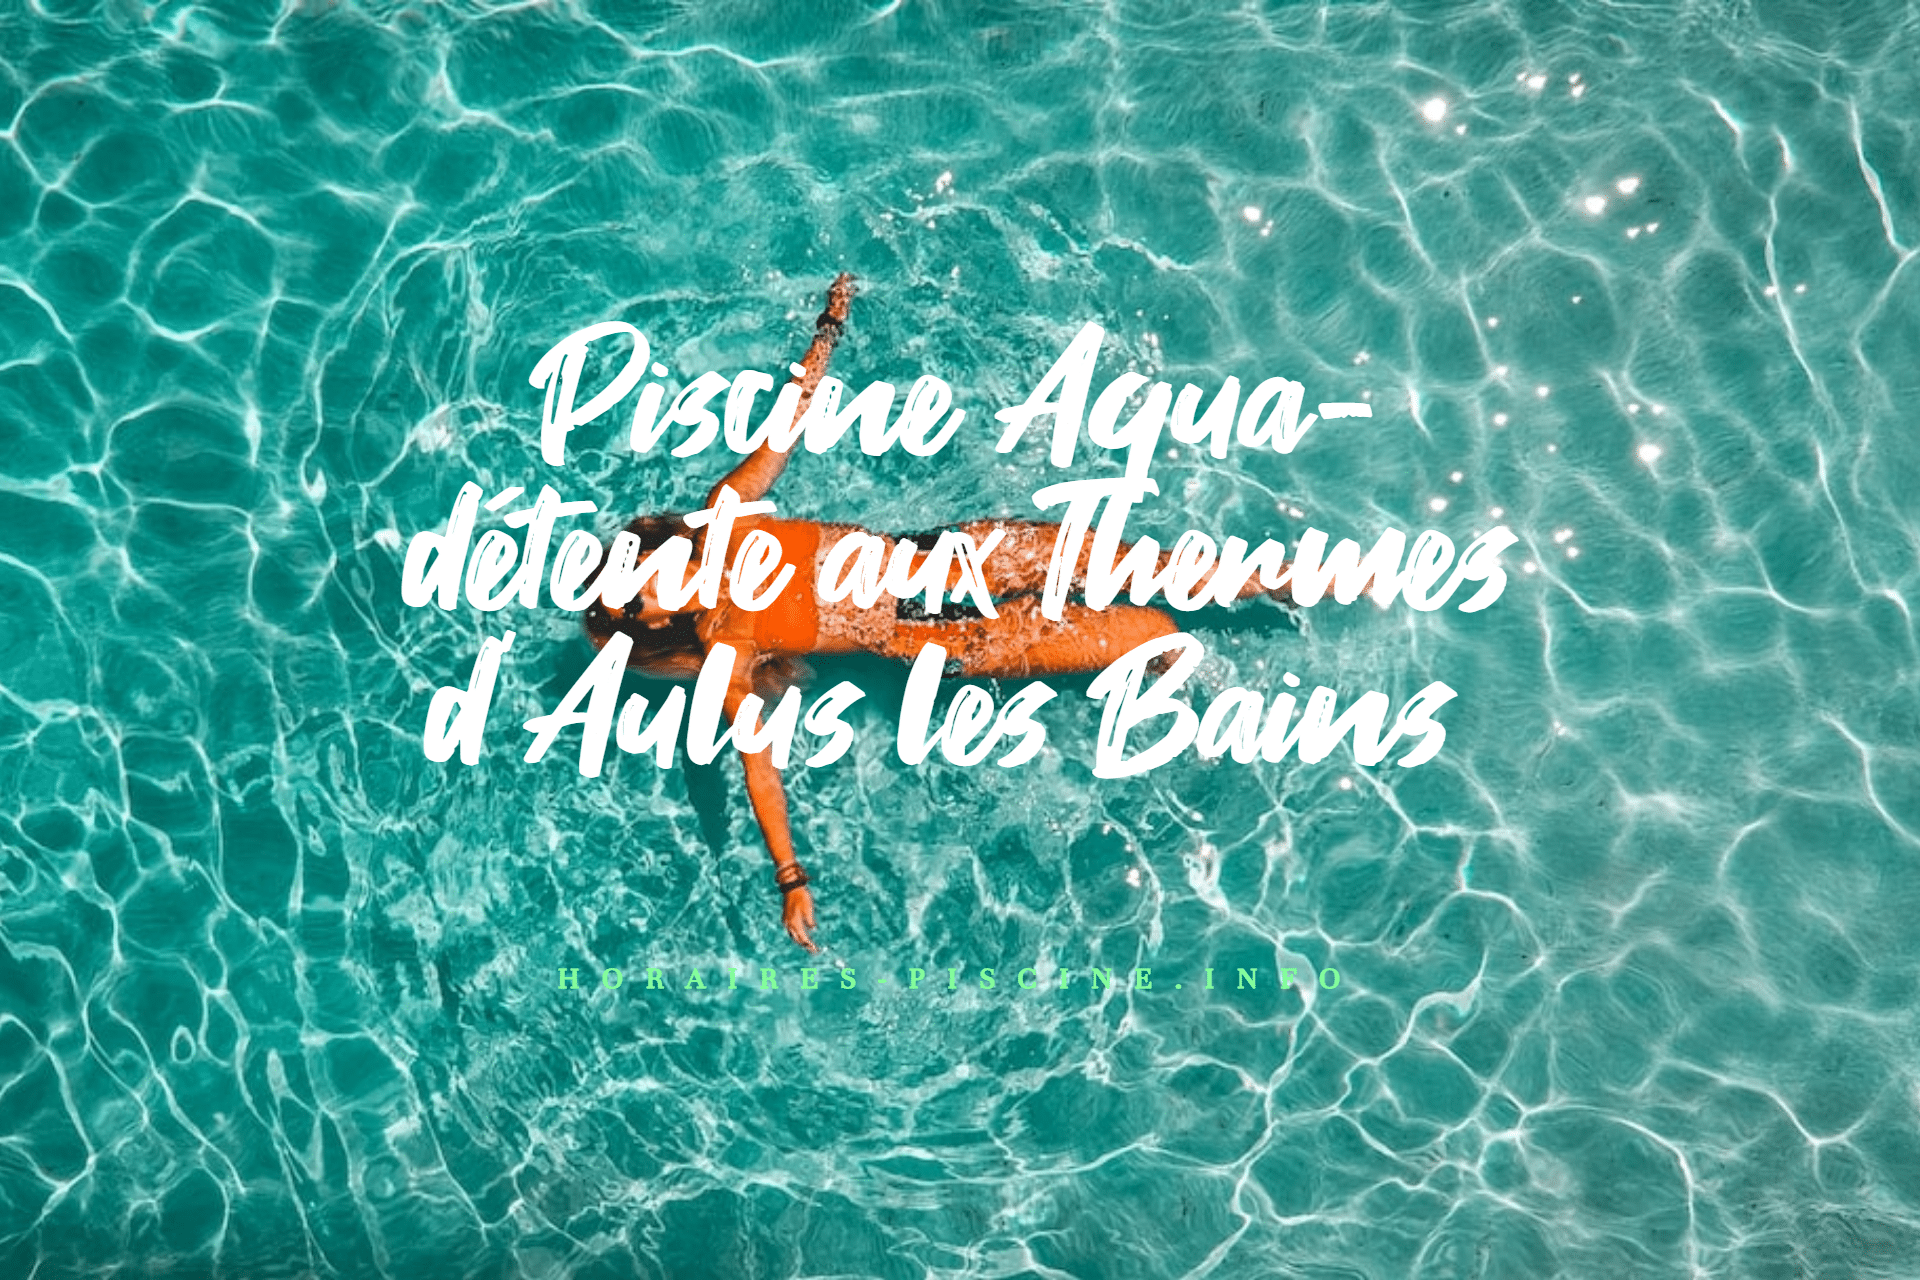 Piscine Aqua-détente aux Thermes d'Aulus les Bains